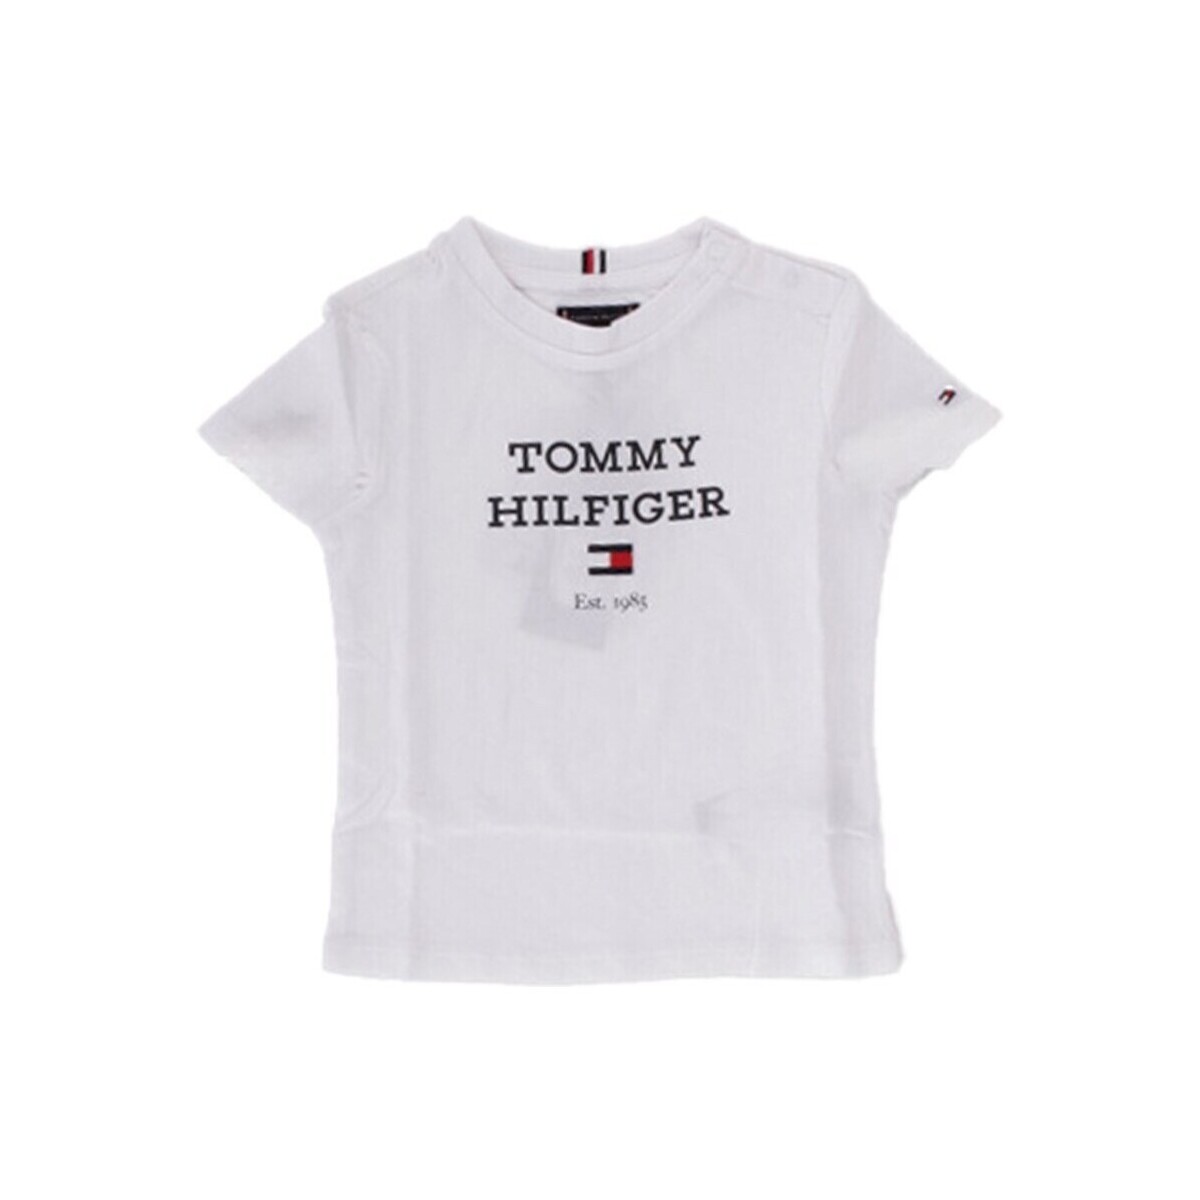 textil Pojkar T-shirts Tommy Hilfiger KB0KB08671 Vit